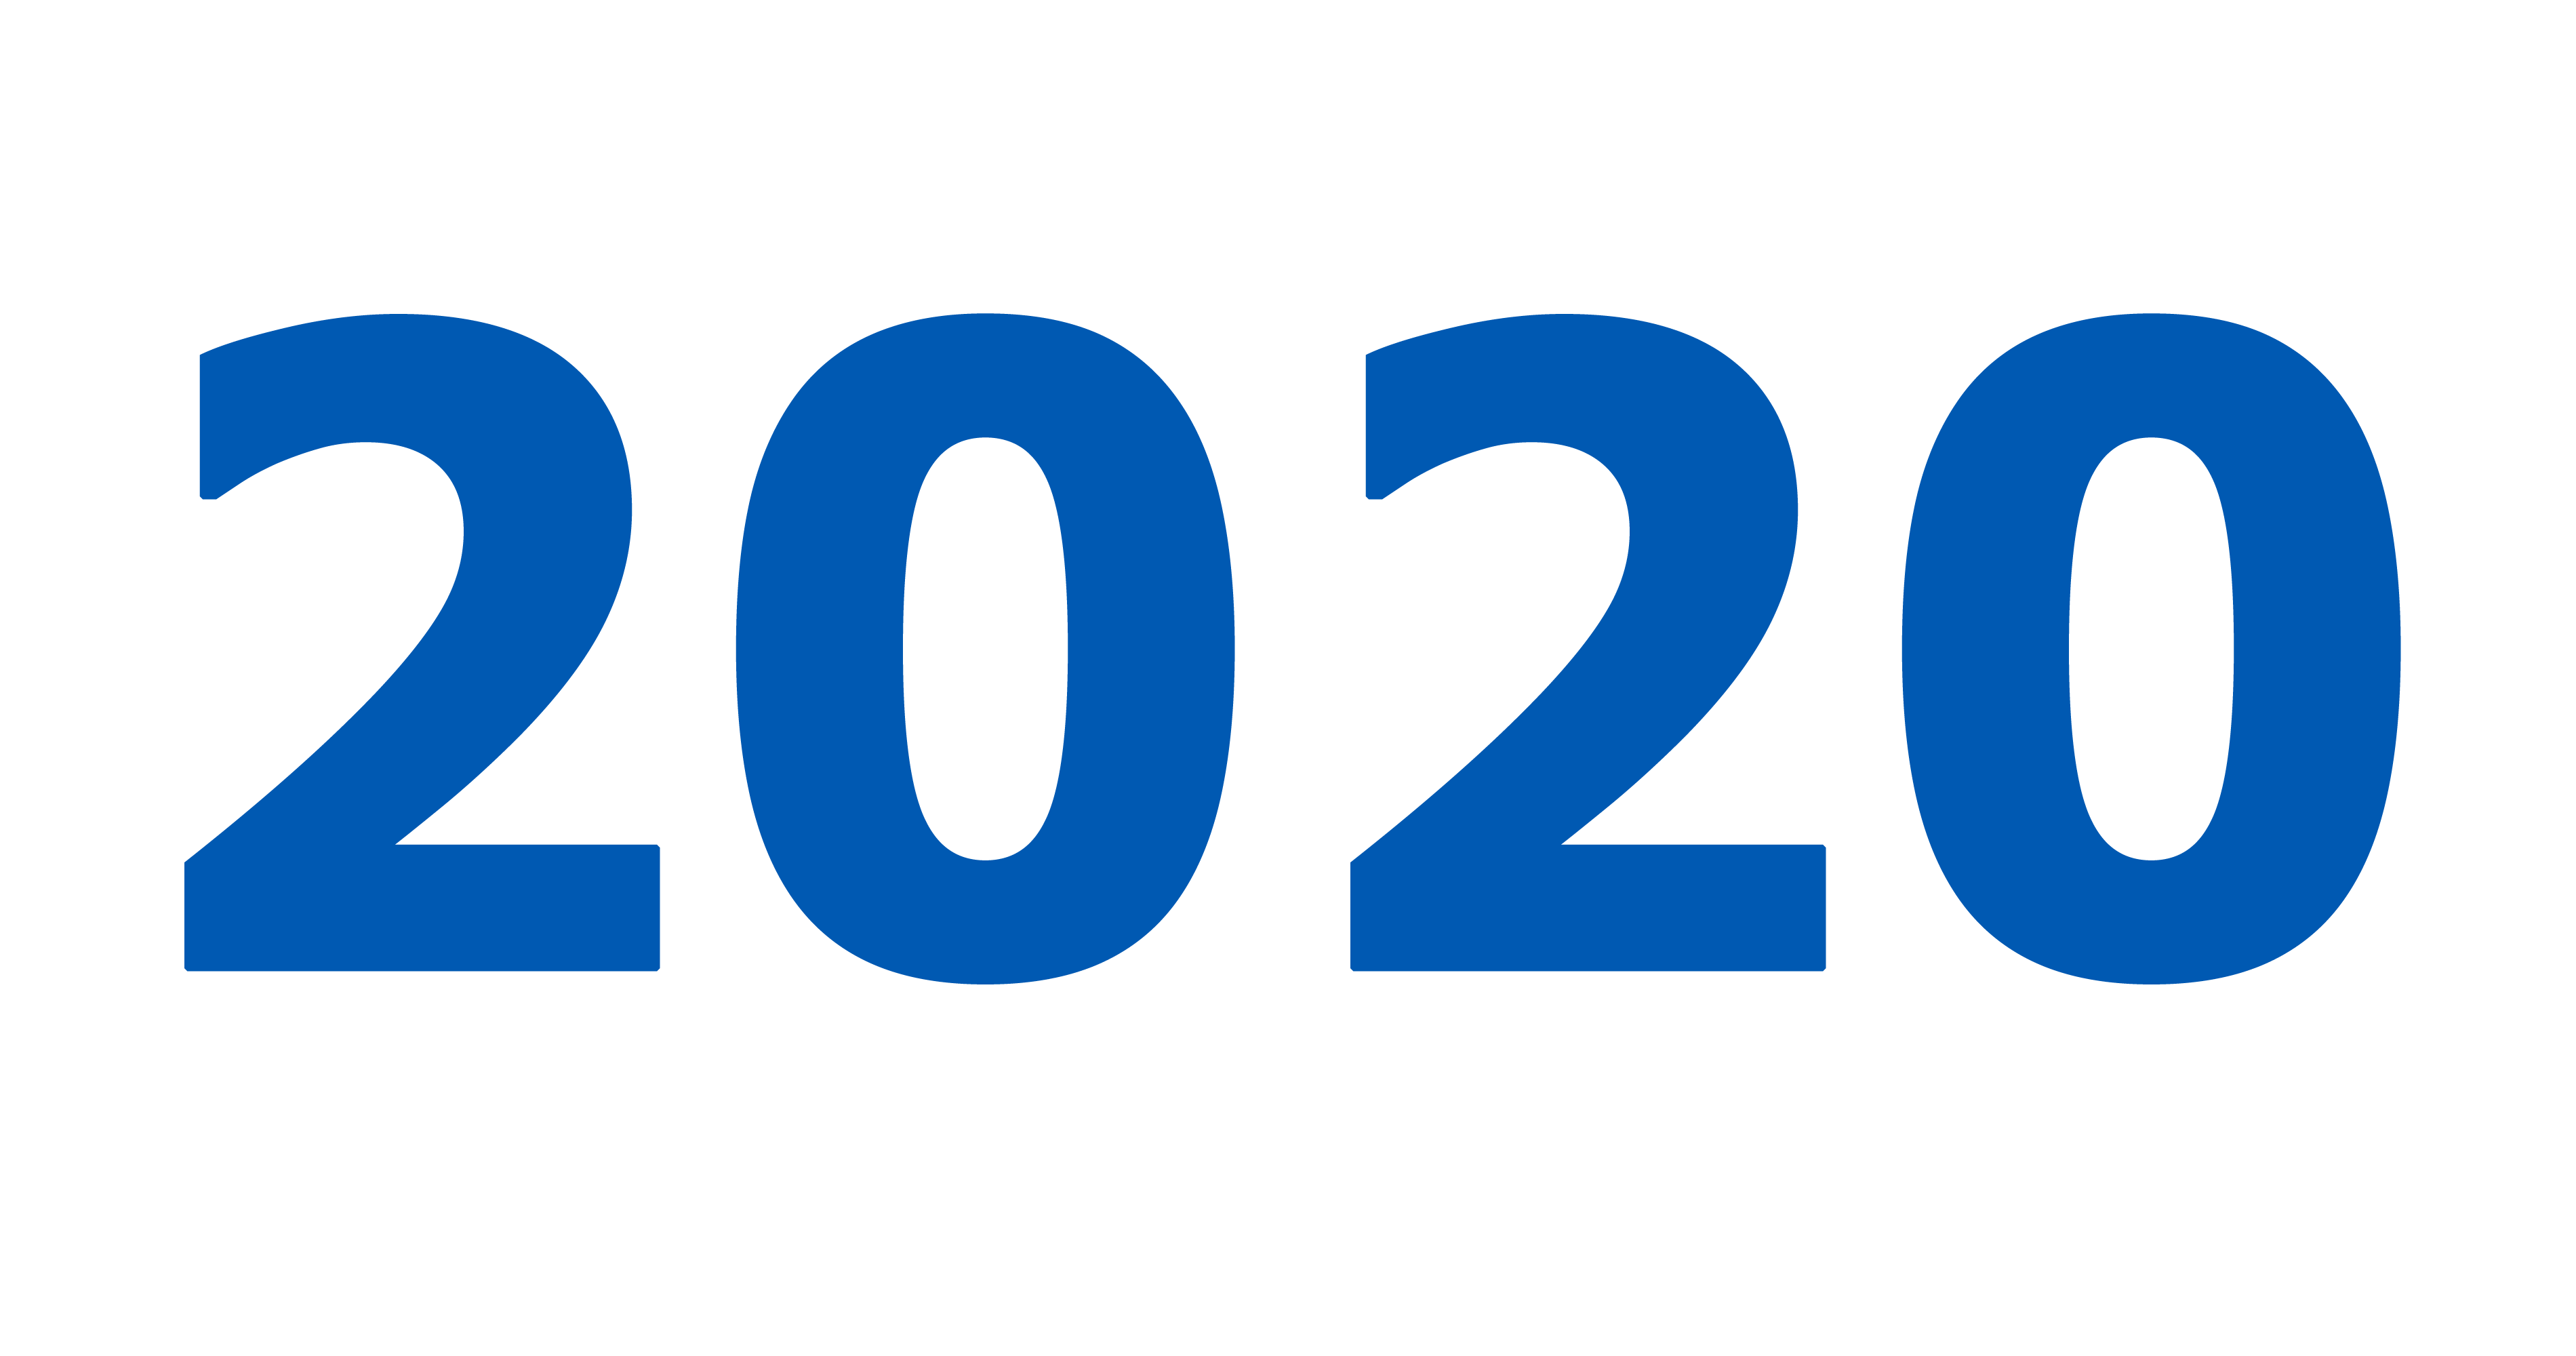 2020. Цифры 2020. 2020 Надпись. Логотип 2020 года. 2020 Год цифры.